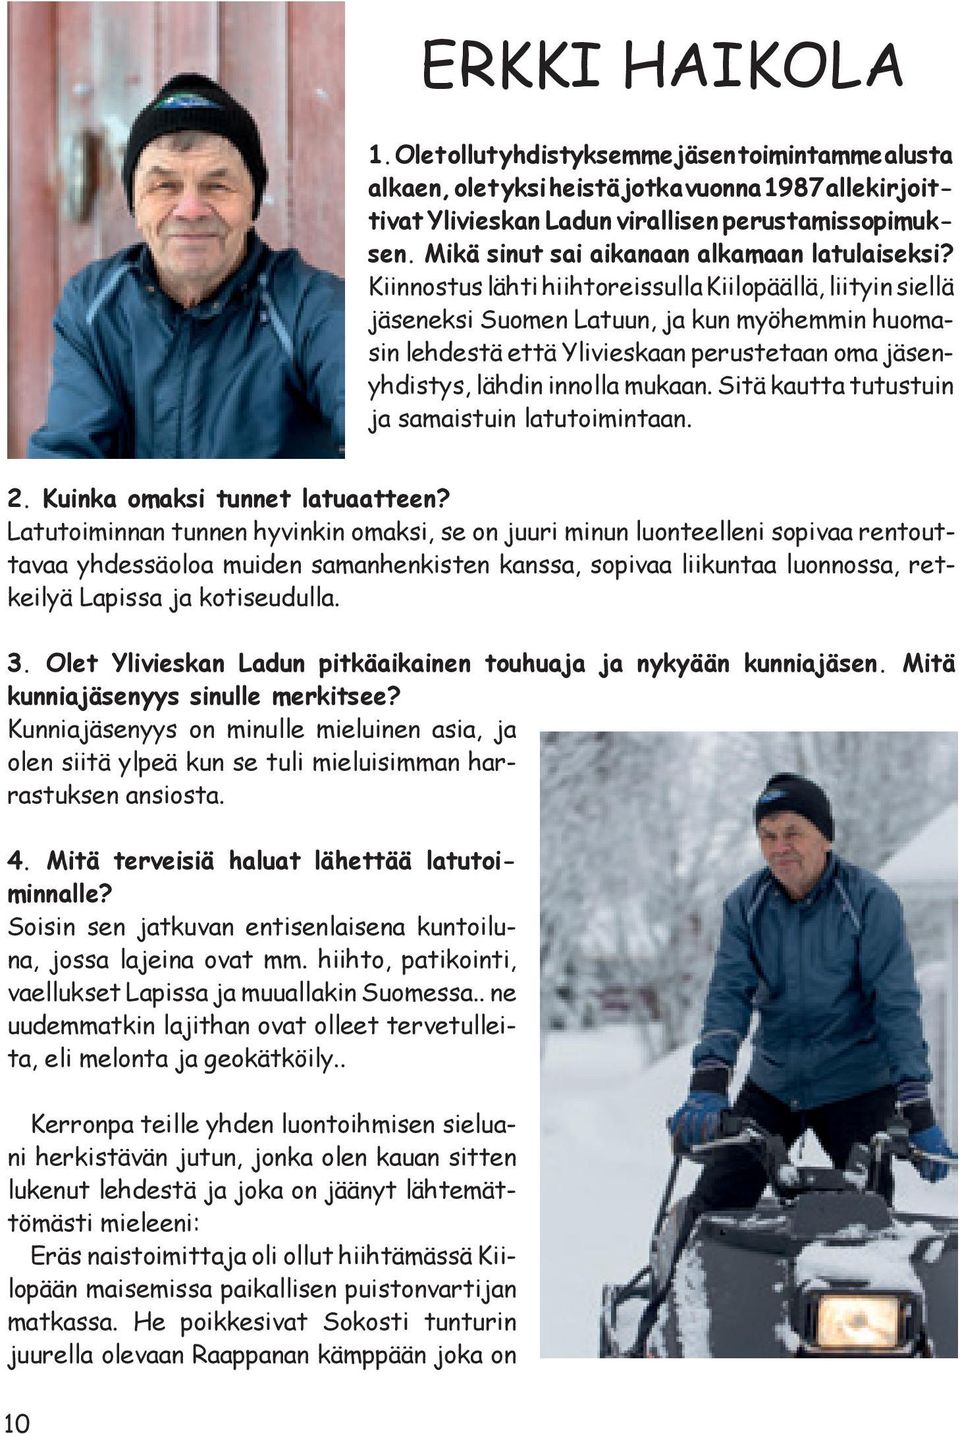 Kiinnostus lähti hiihtoreissulla Kiilopäällä, liityin siellä jäseneksi Suomen Latuun, ja kun myöhemmin huomasin lehdestä että Ylivieskaan perustetaan oma jäsenyhdistys, lähdin innolla mukaan.